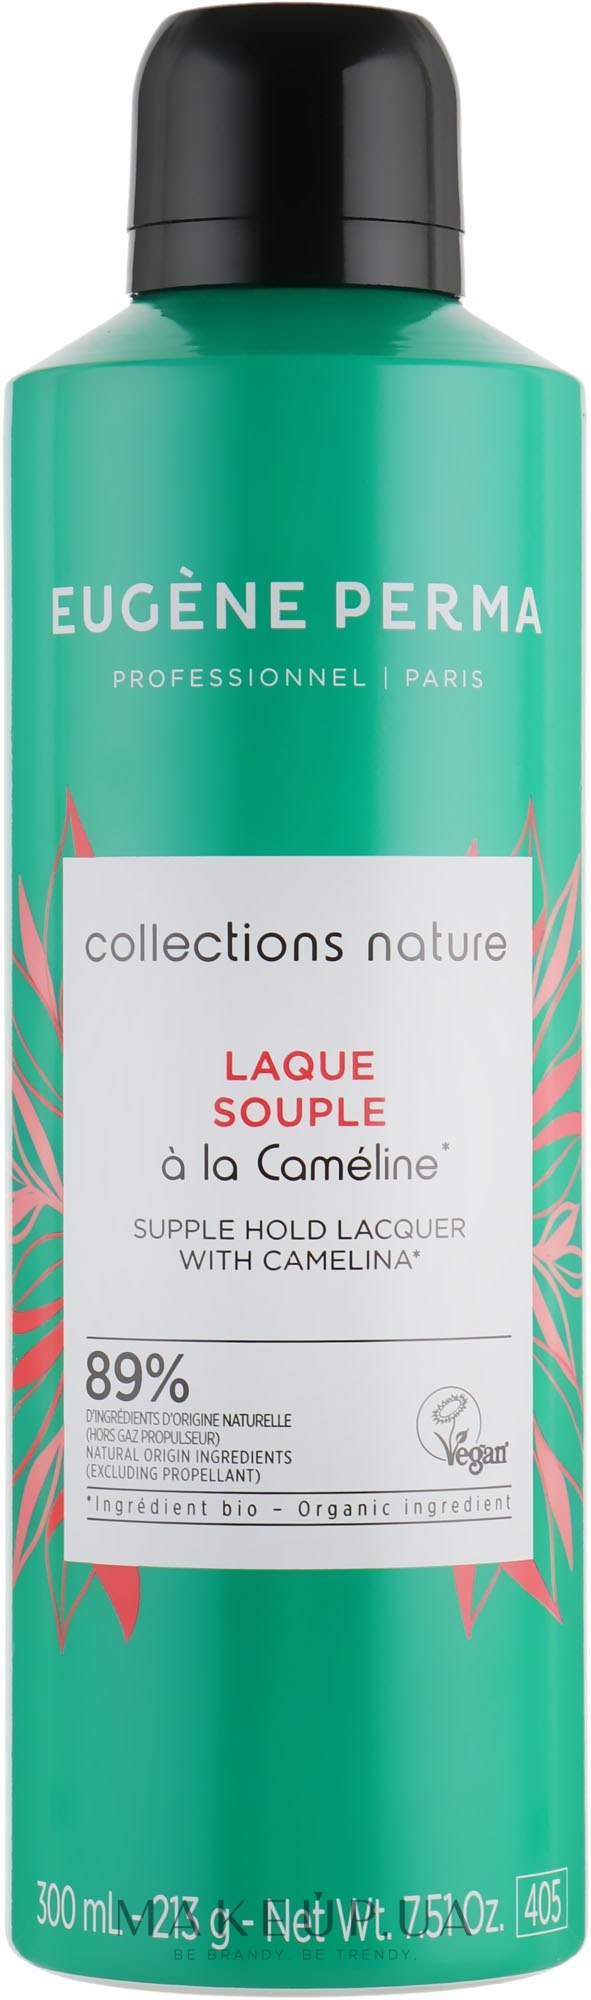 Лак для волос лёгкой фиксации - Eugene Perma Collections Nature Laque Souple — фото 300ml